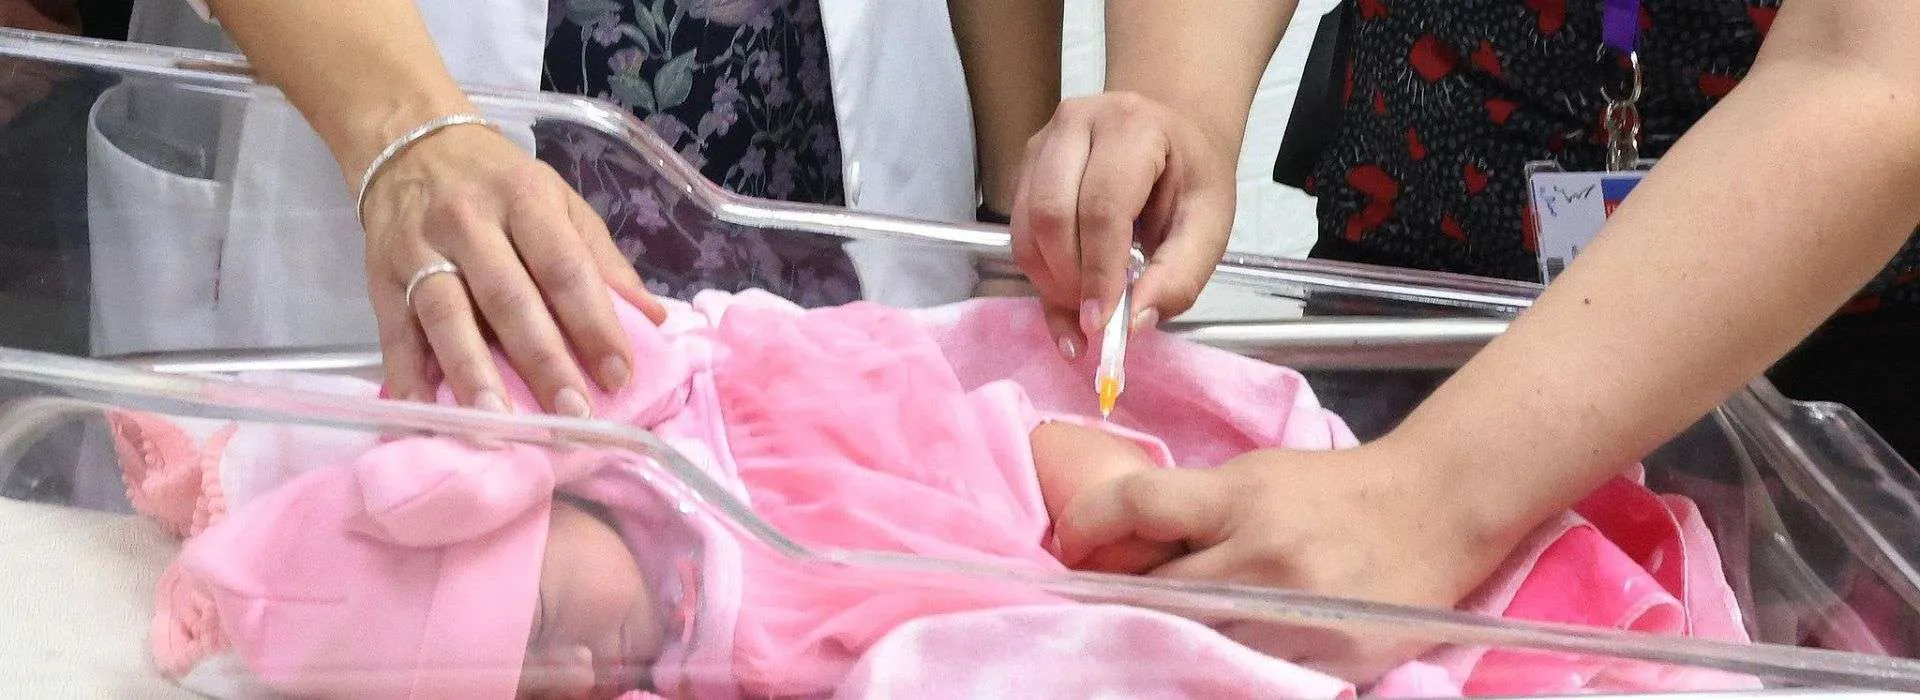 Chile inició inmunización contra el virus respiratorio sincicial para lactantes y menores de 6 meses de edad